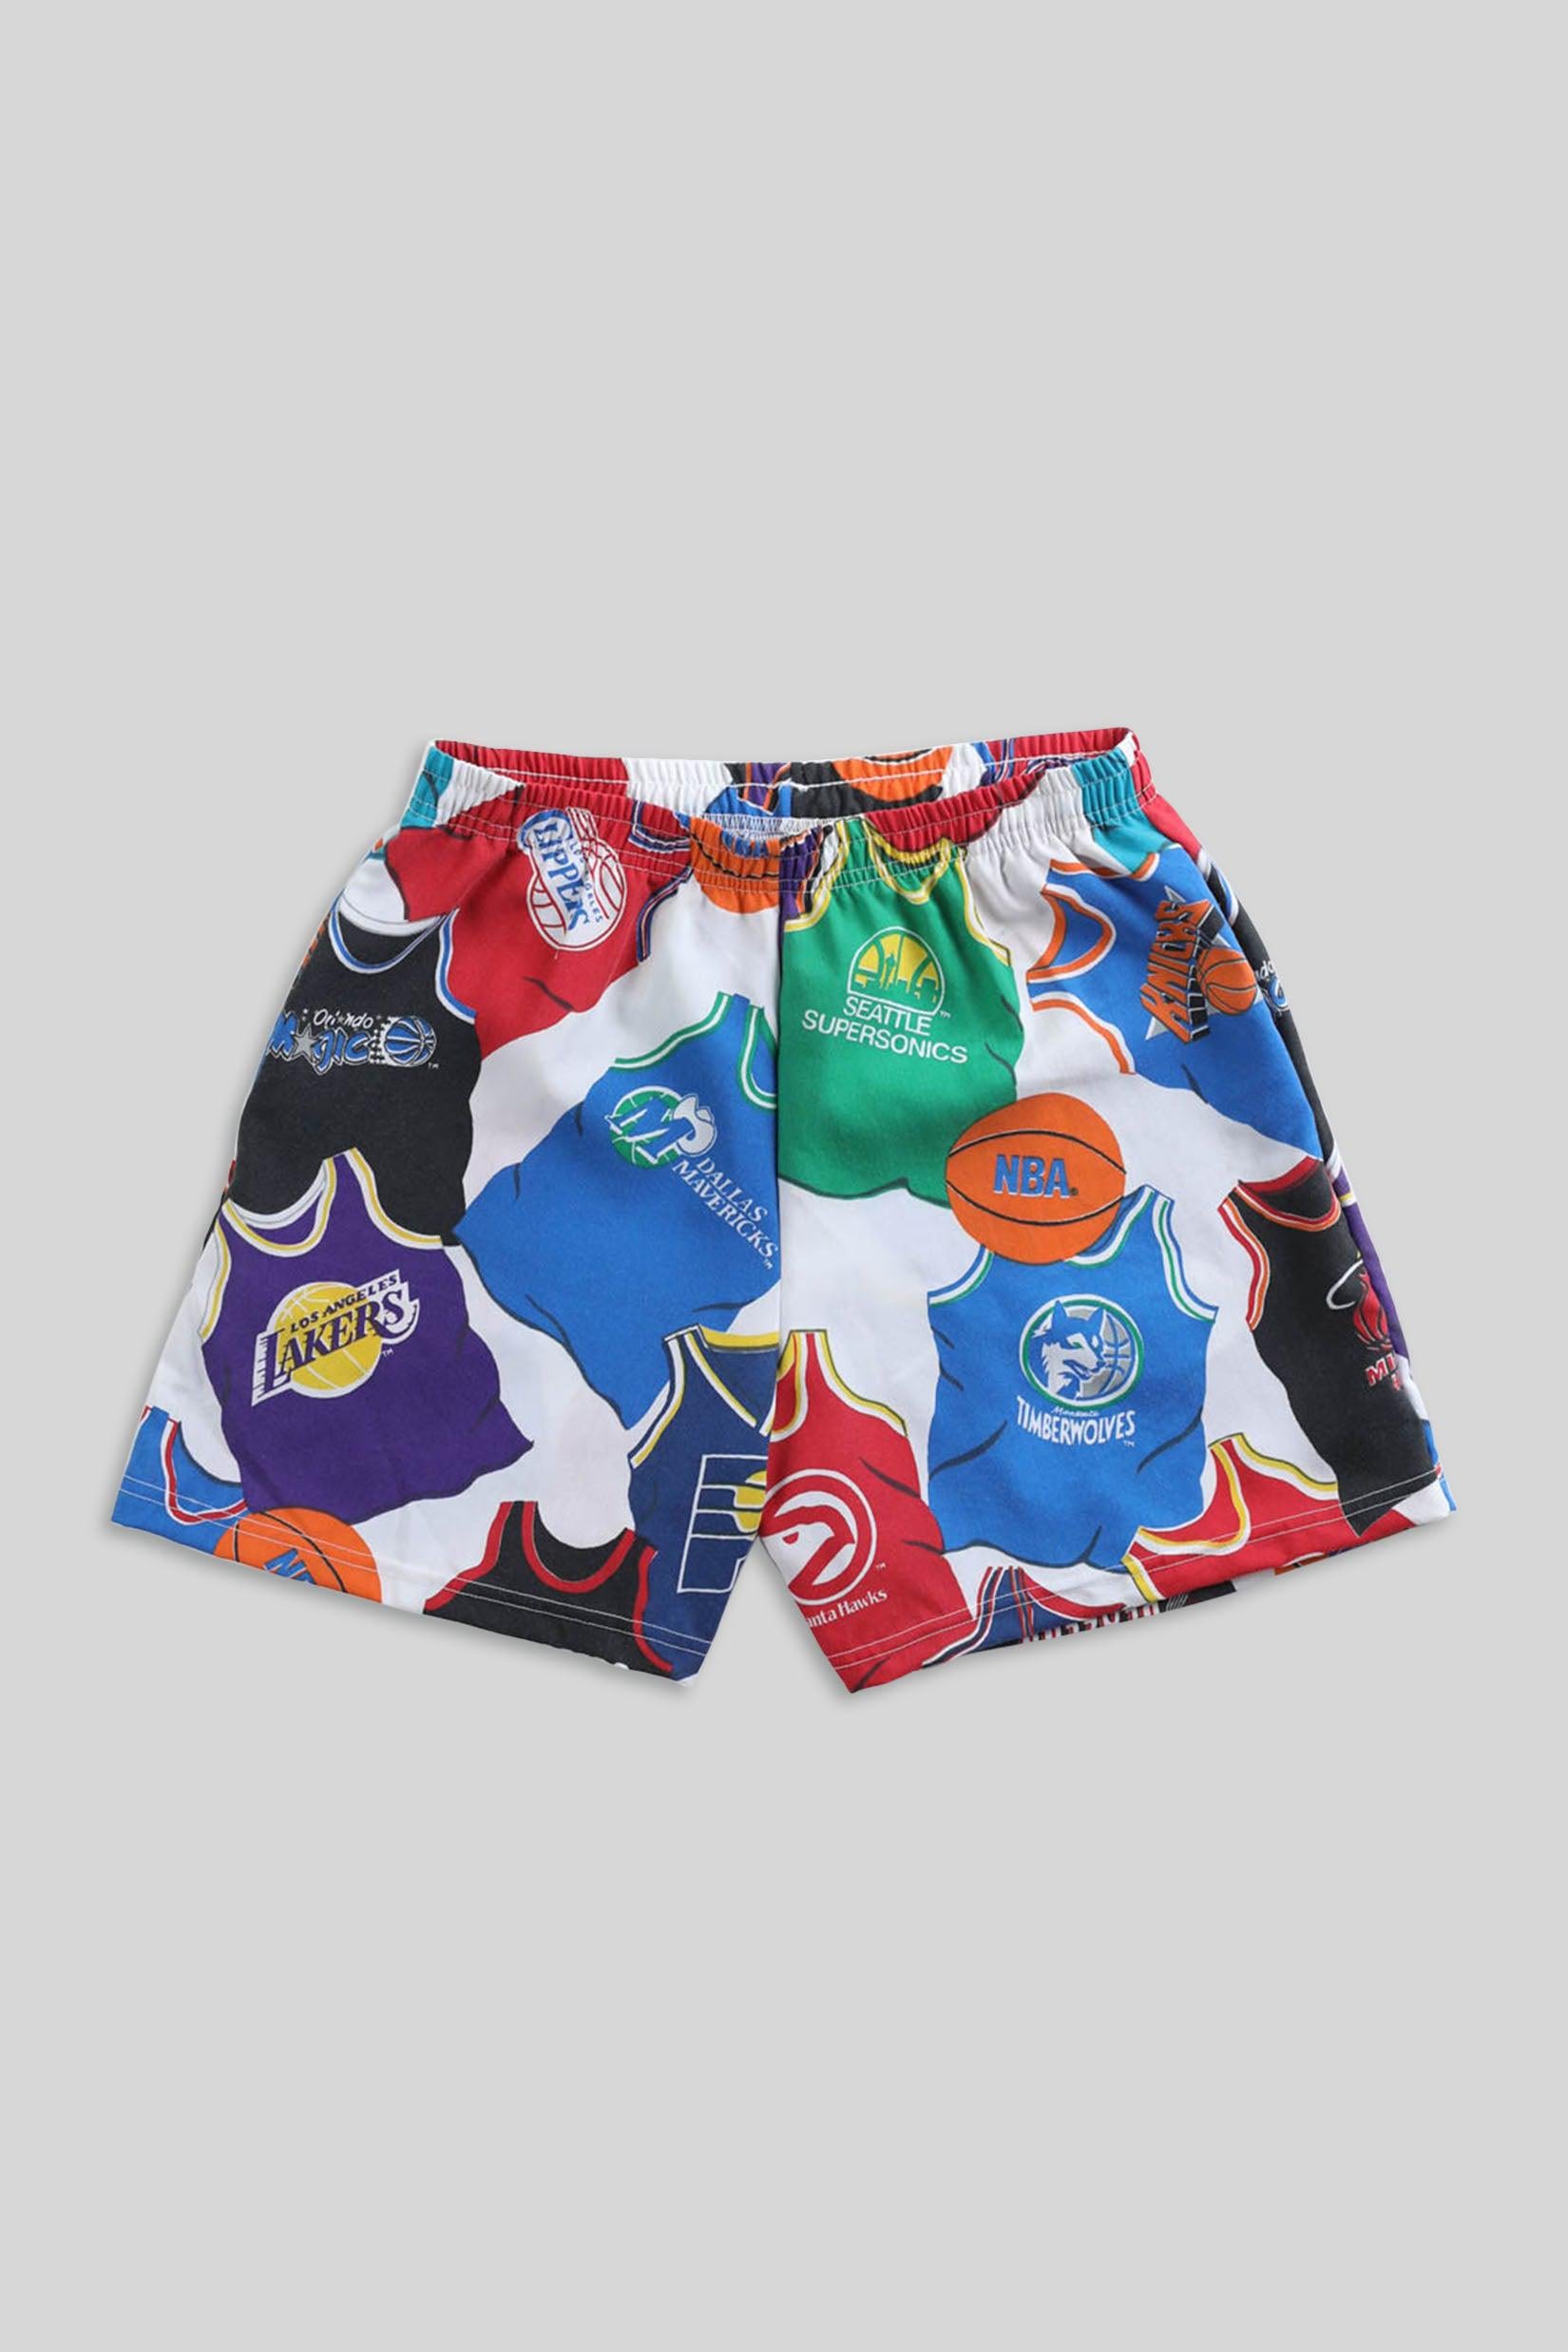 Vintage Seattle Sonics NBA hoodie. Measures XS